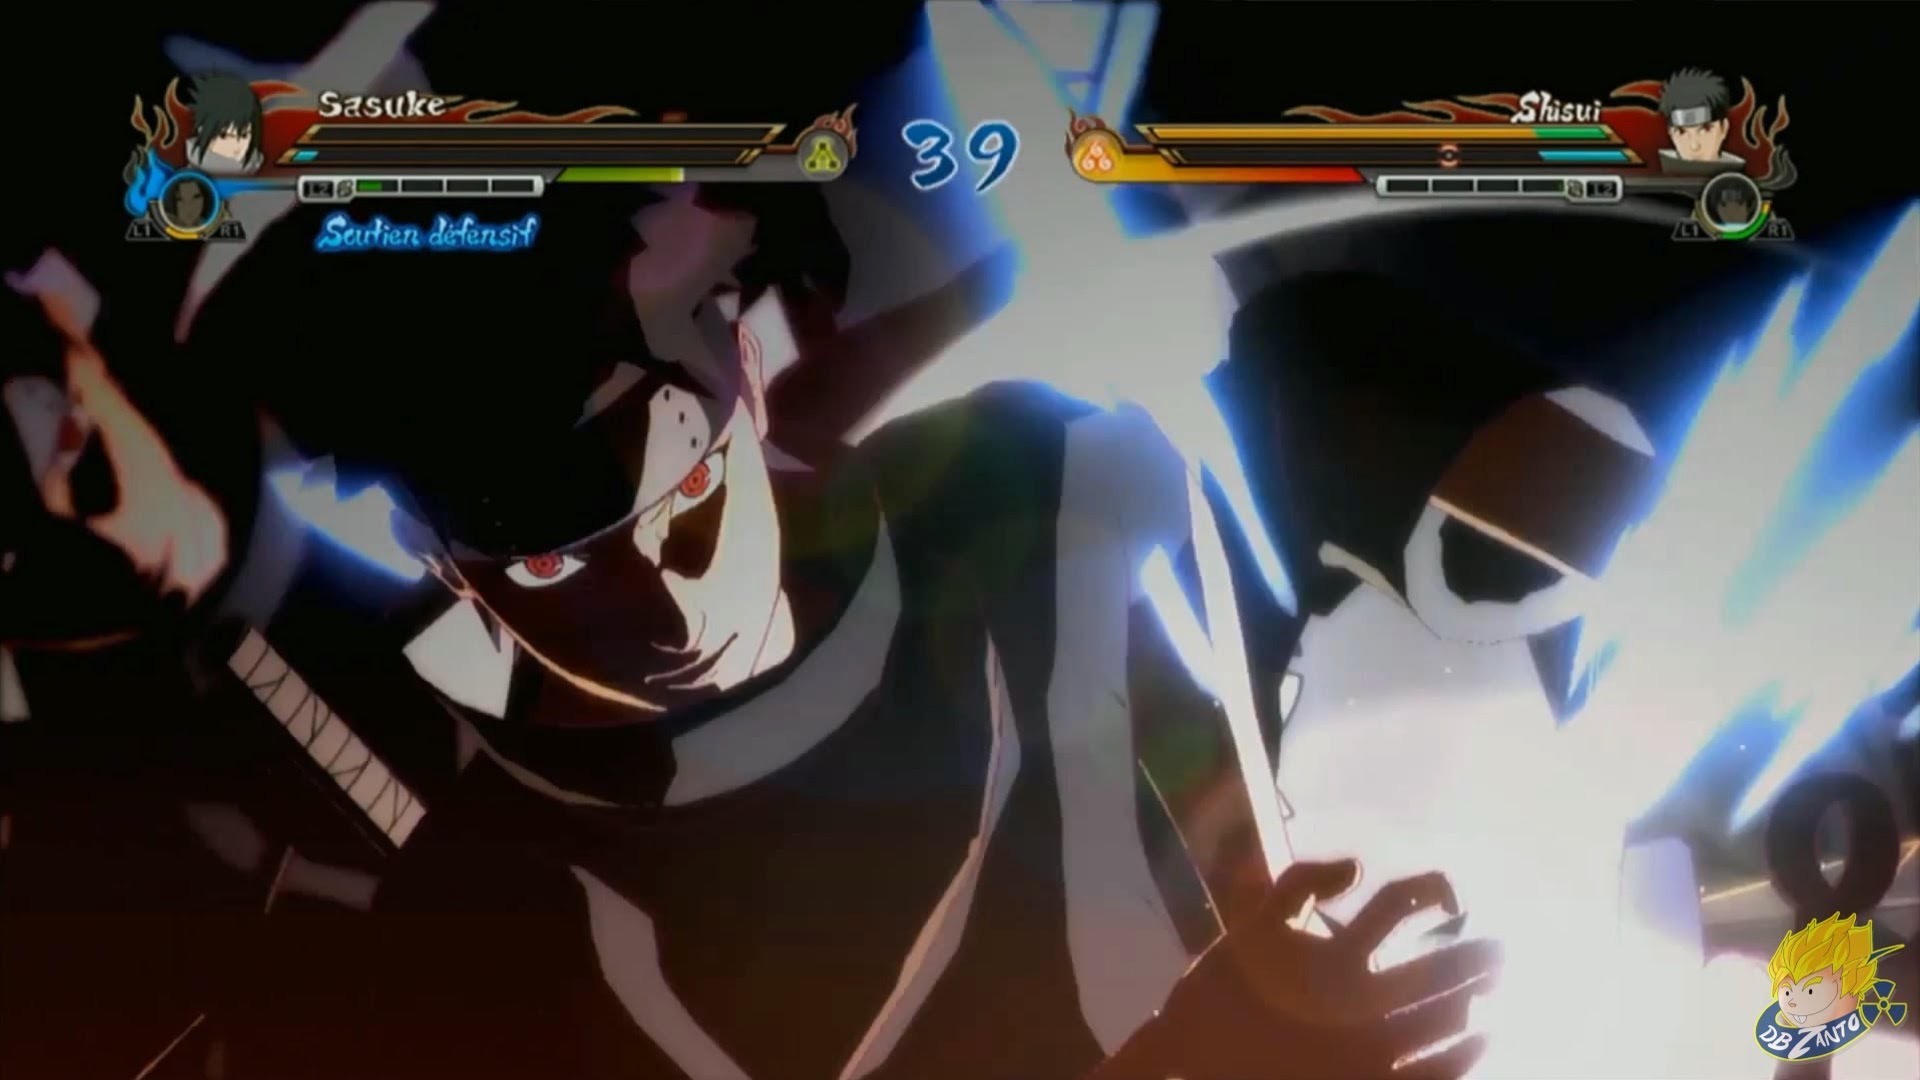 1920x1080 Naruto Storm Revolution - Sasuke Uchiha Vs Shisui Uchiha Gameplay (Japan  Expo 2014)ãHDã - YouTube